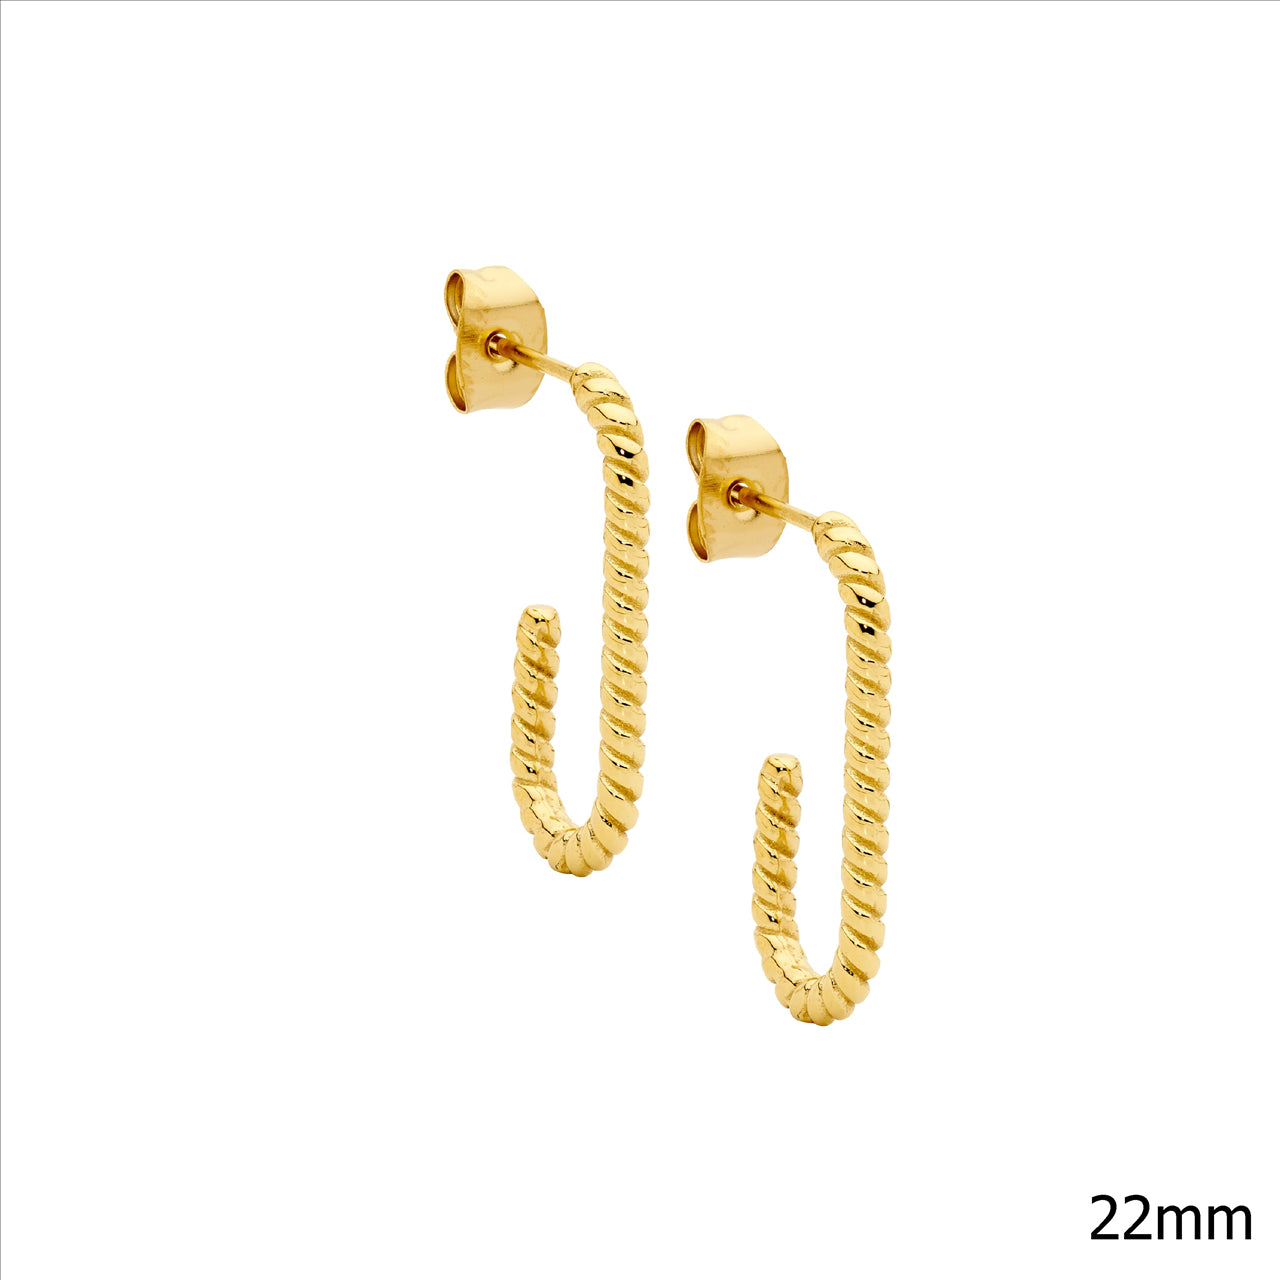 Oval Twist Half Hoop Earrings - Yellow Gold.